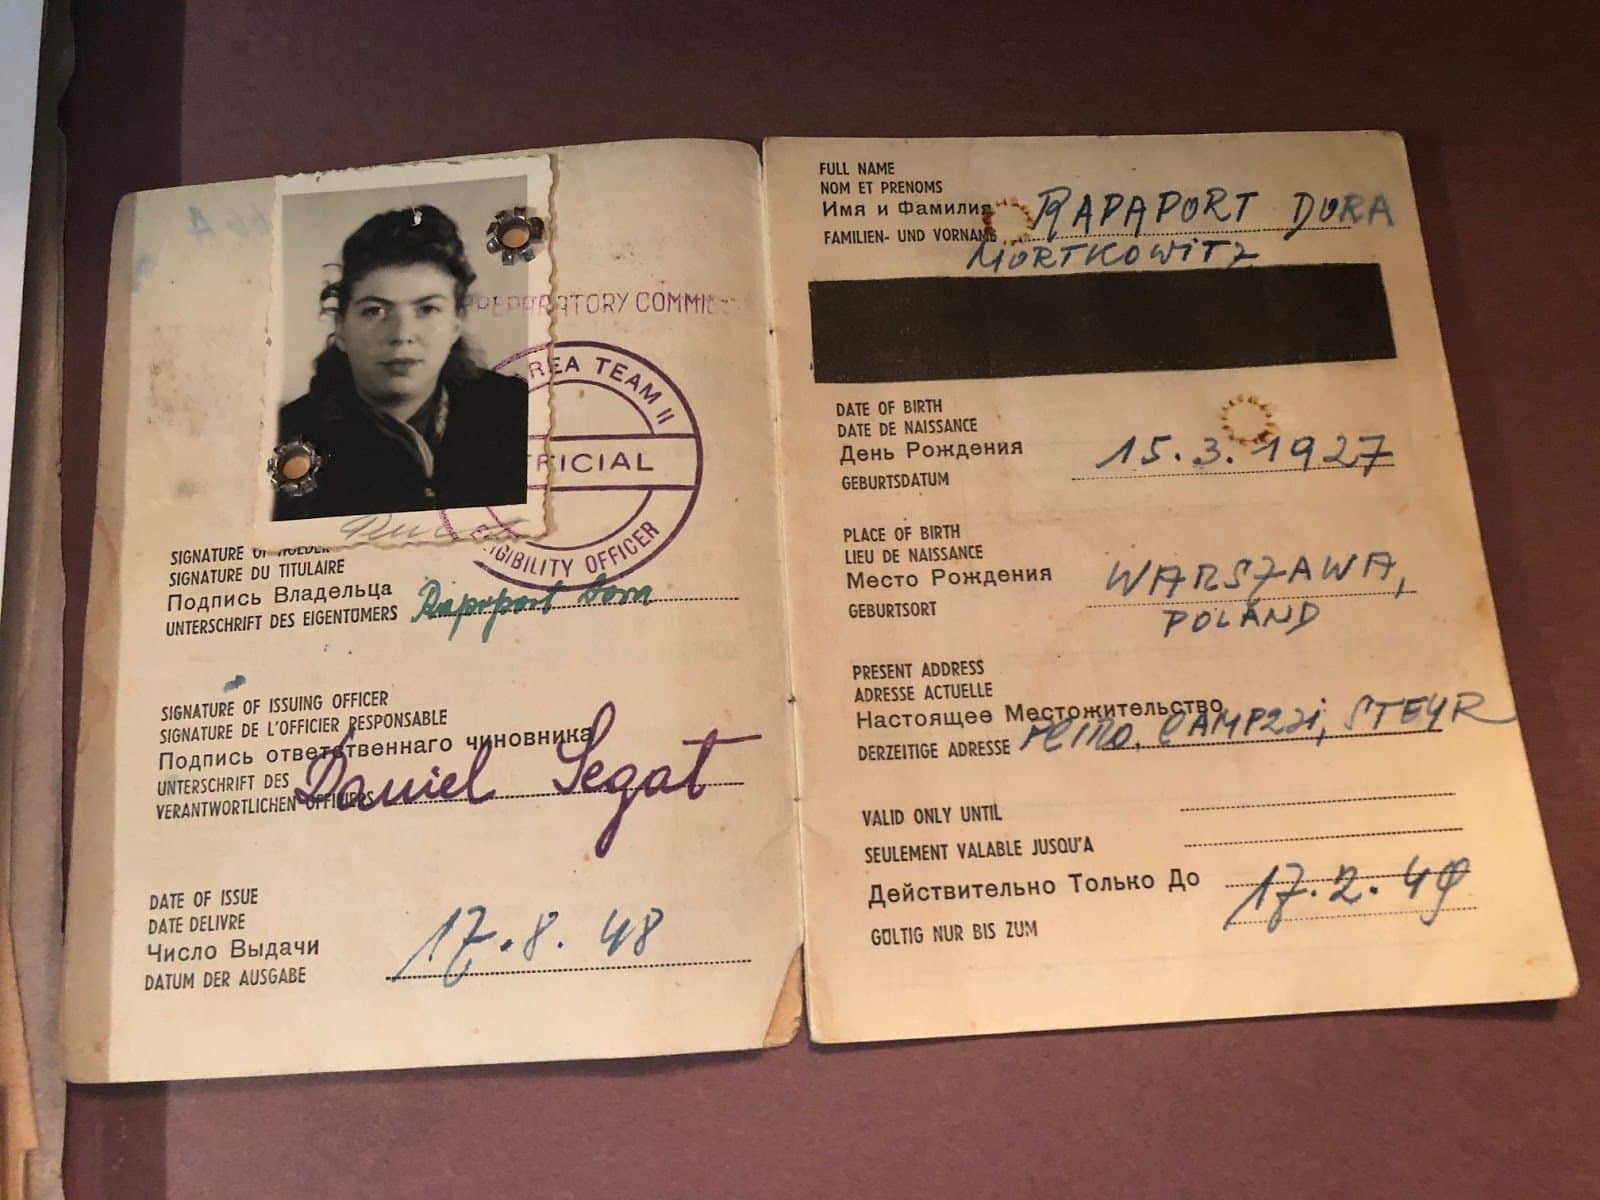 Doras pass, utfärdat 1948